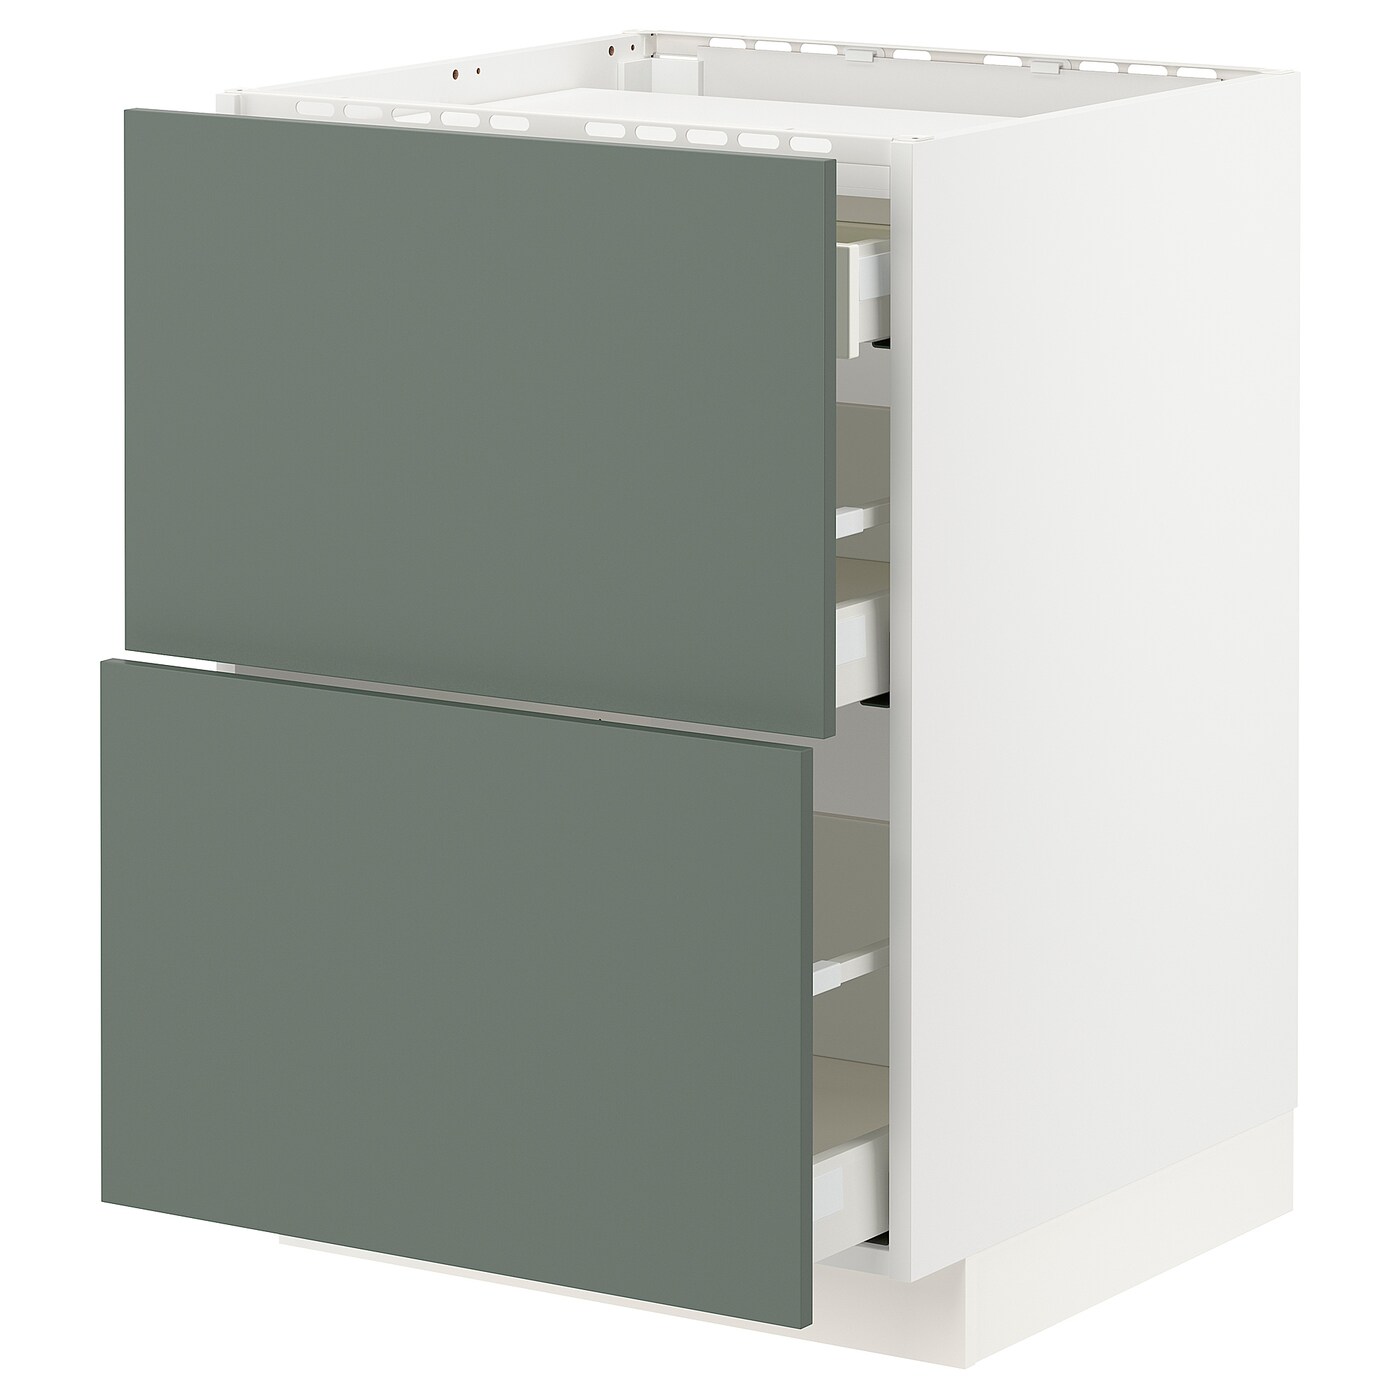 Напольный кухонный шкаф  - IKEA METOD MAXIMERA, 80x61,6x60см, белый/серый, МЕТОД МАКСИМЕРА ИКЕА